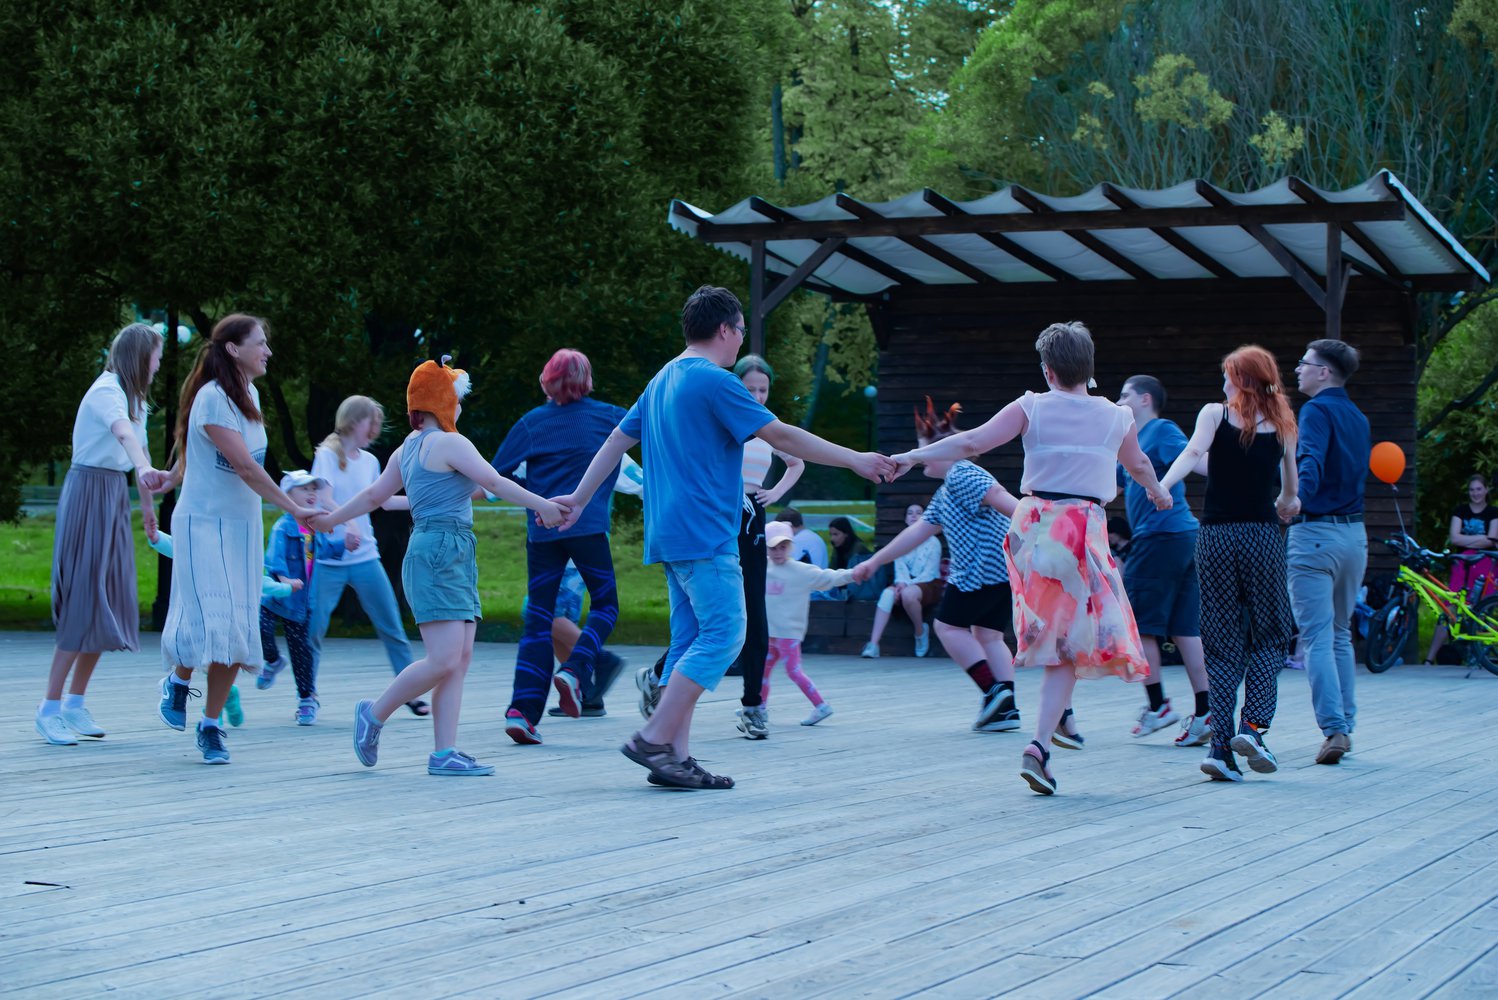 23 июля в рамках празднования Дня города Пскова приглашаем молодёжь на открытый вечер танцев «Чай, кофе, потанцуем!».